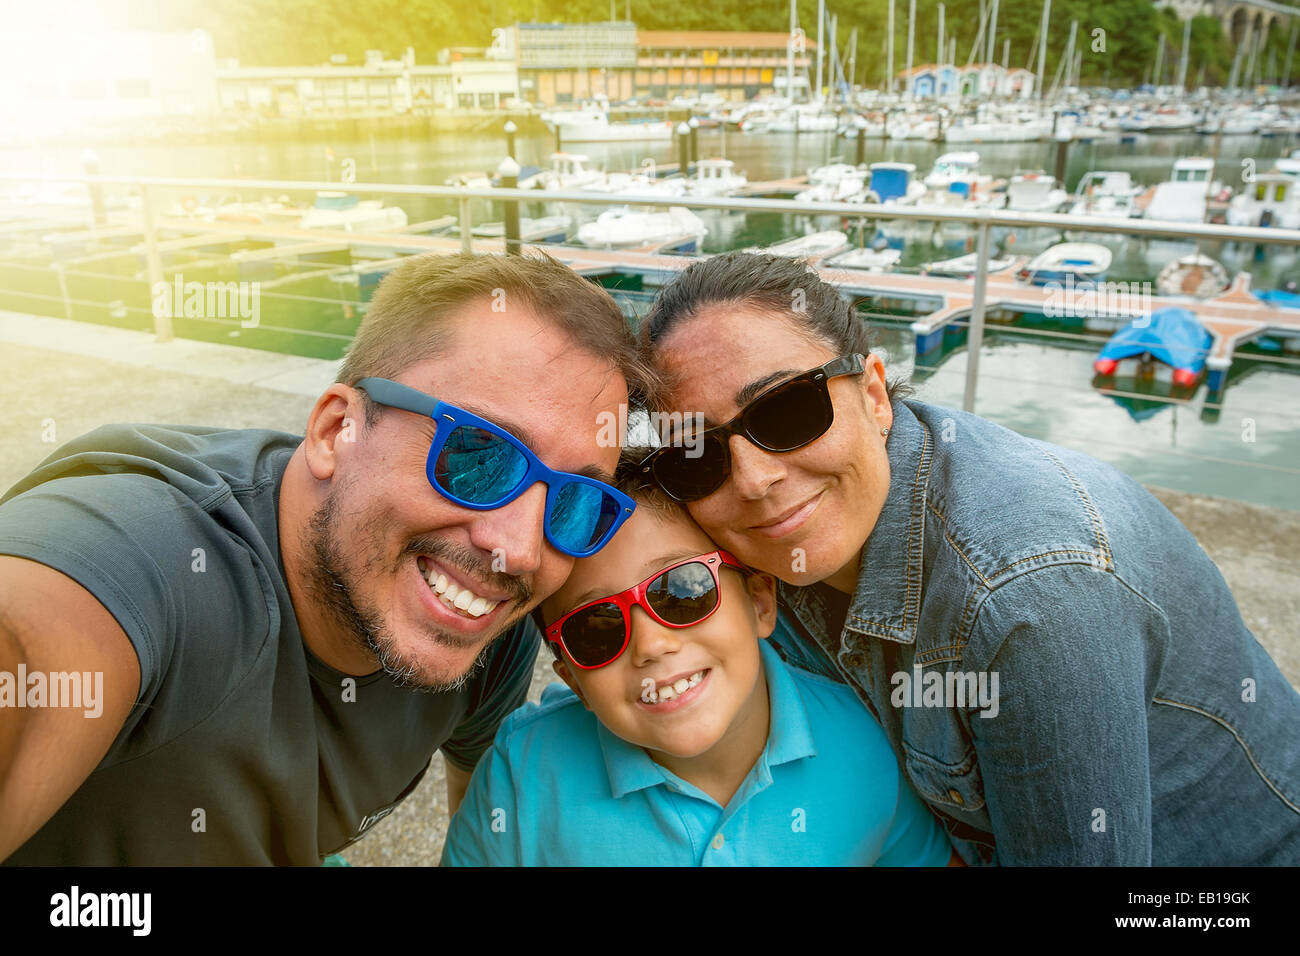 Familie Spaß Sonnenbrille & winkt eine Kamera unter Selfie fotografieren im Sommerurlaub Stockfoto